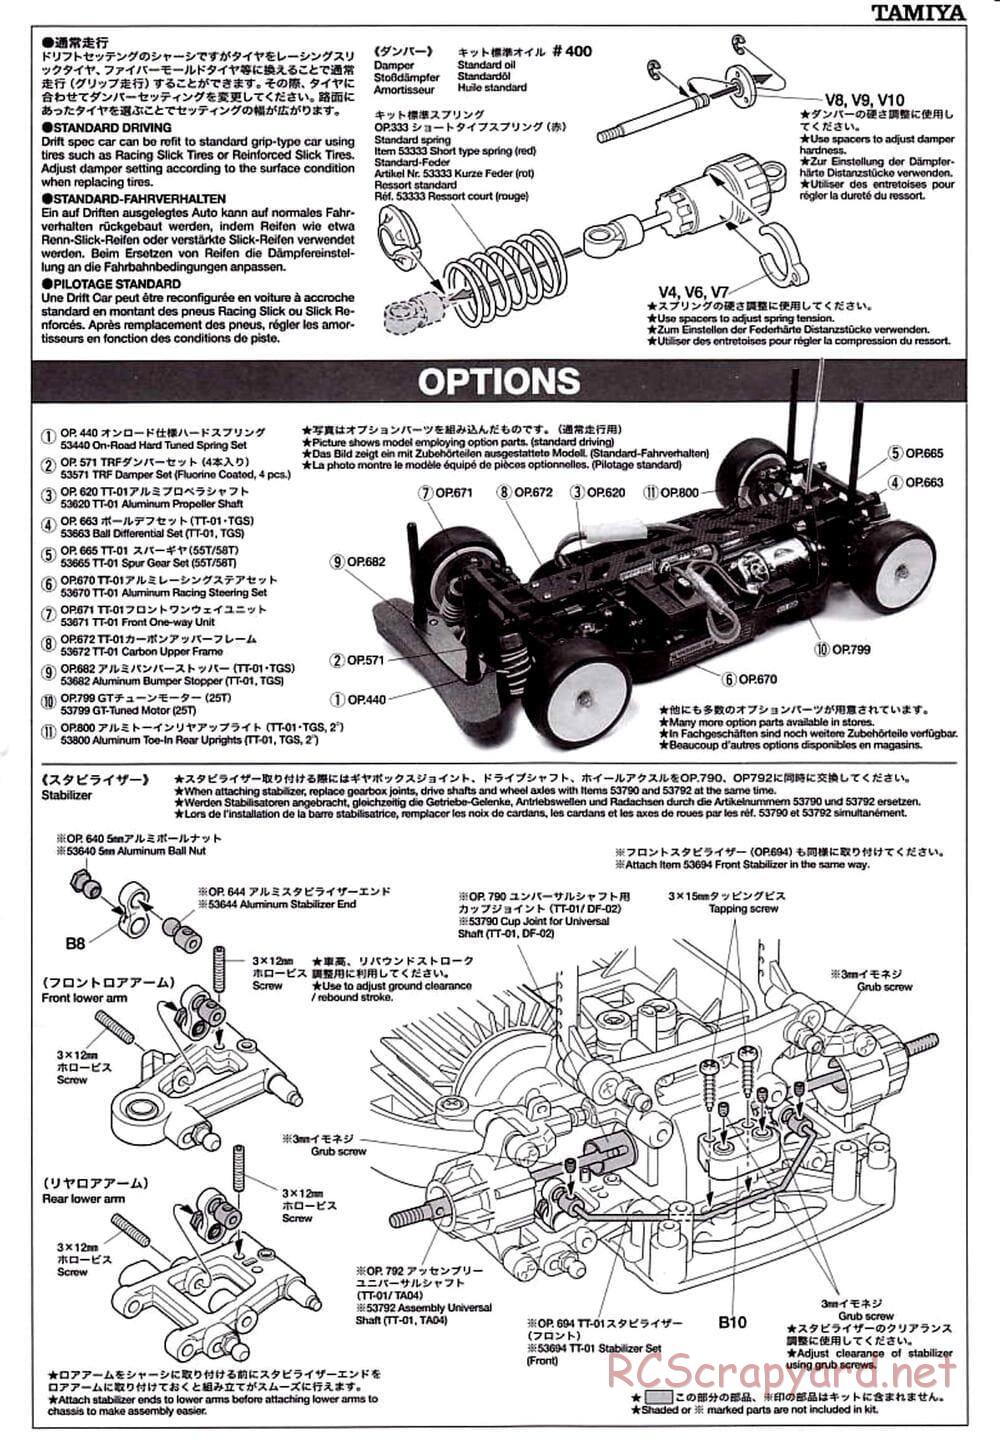 Tamiya - TT-01D Chassis - Manual - Page 18